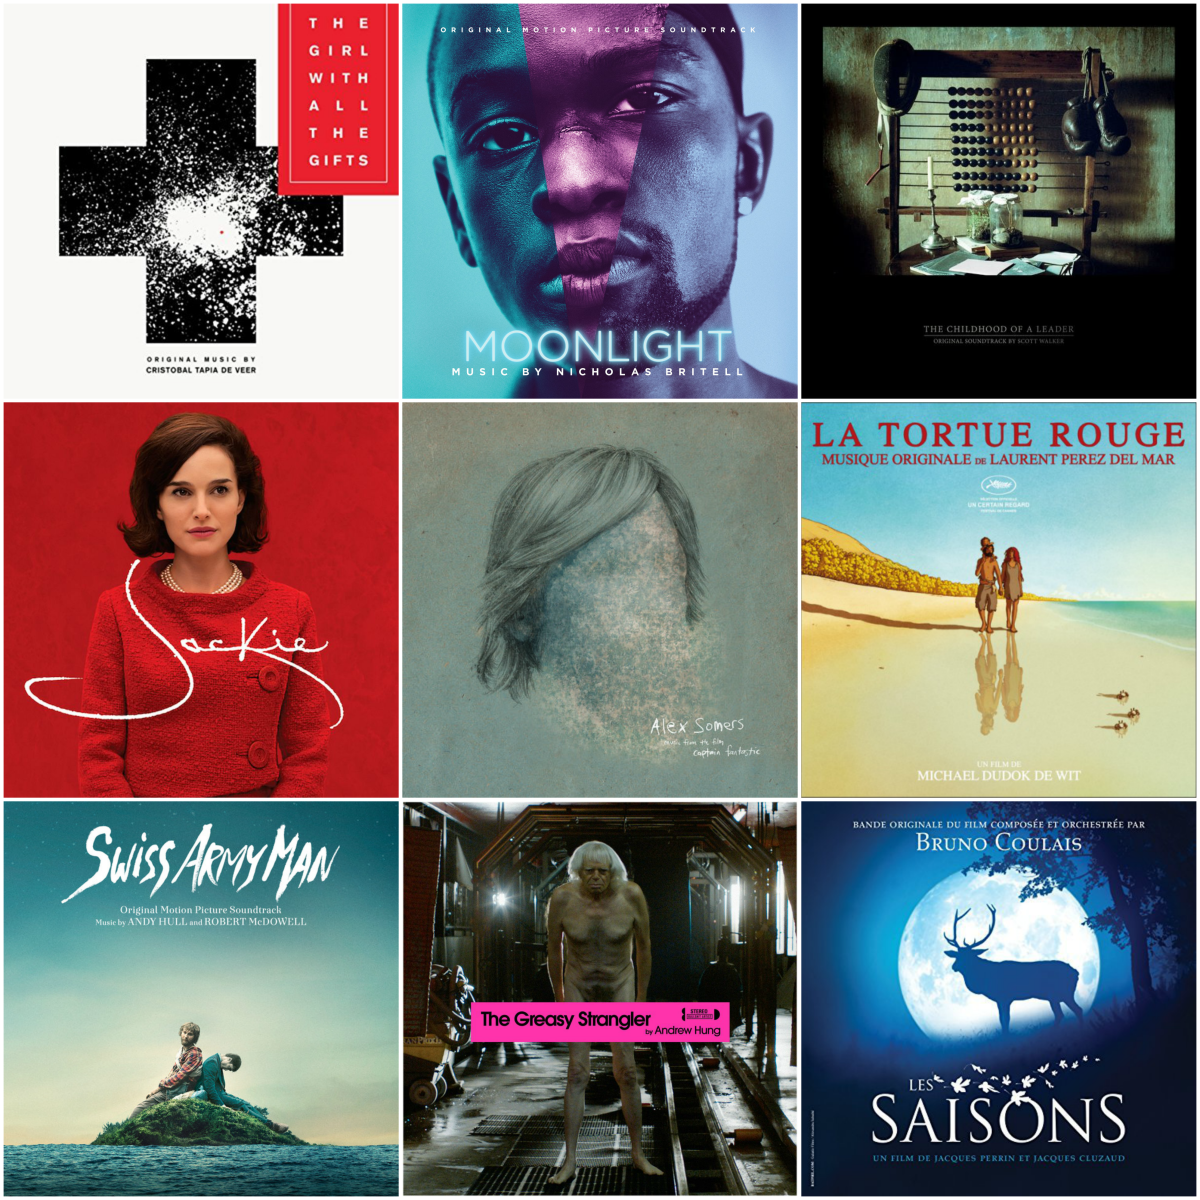 Las 25 mejores bandas sonoras de películas independientes el 2016